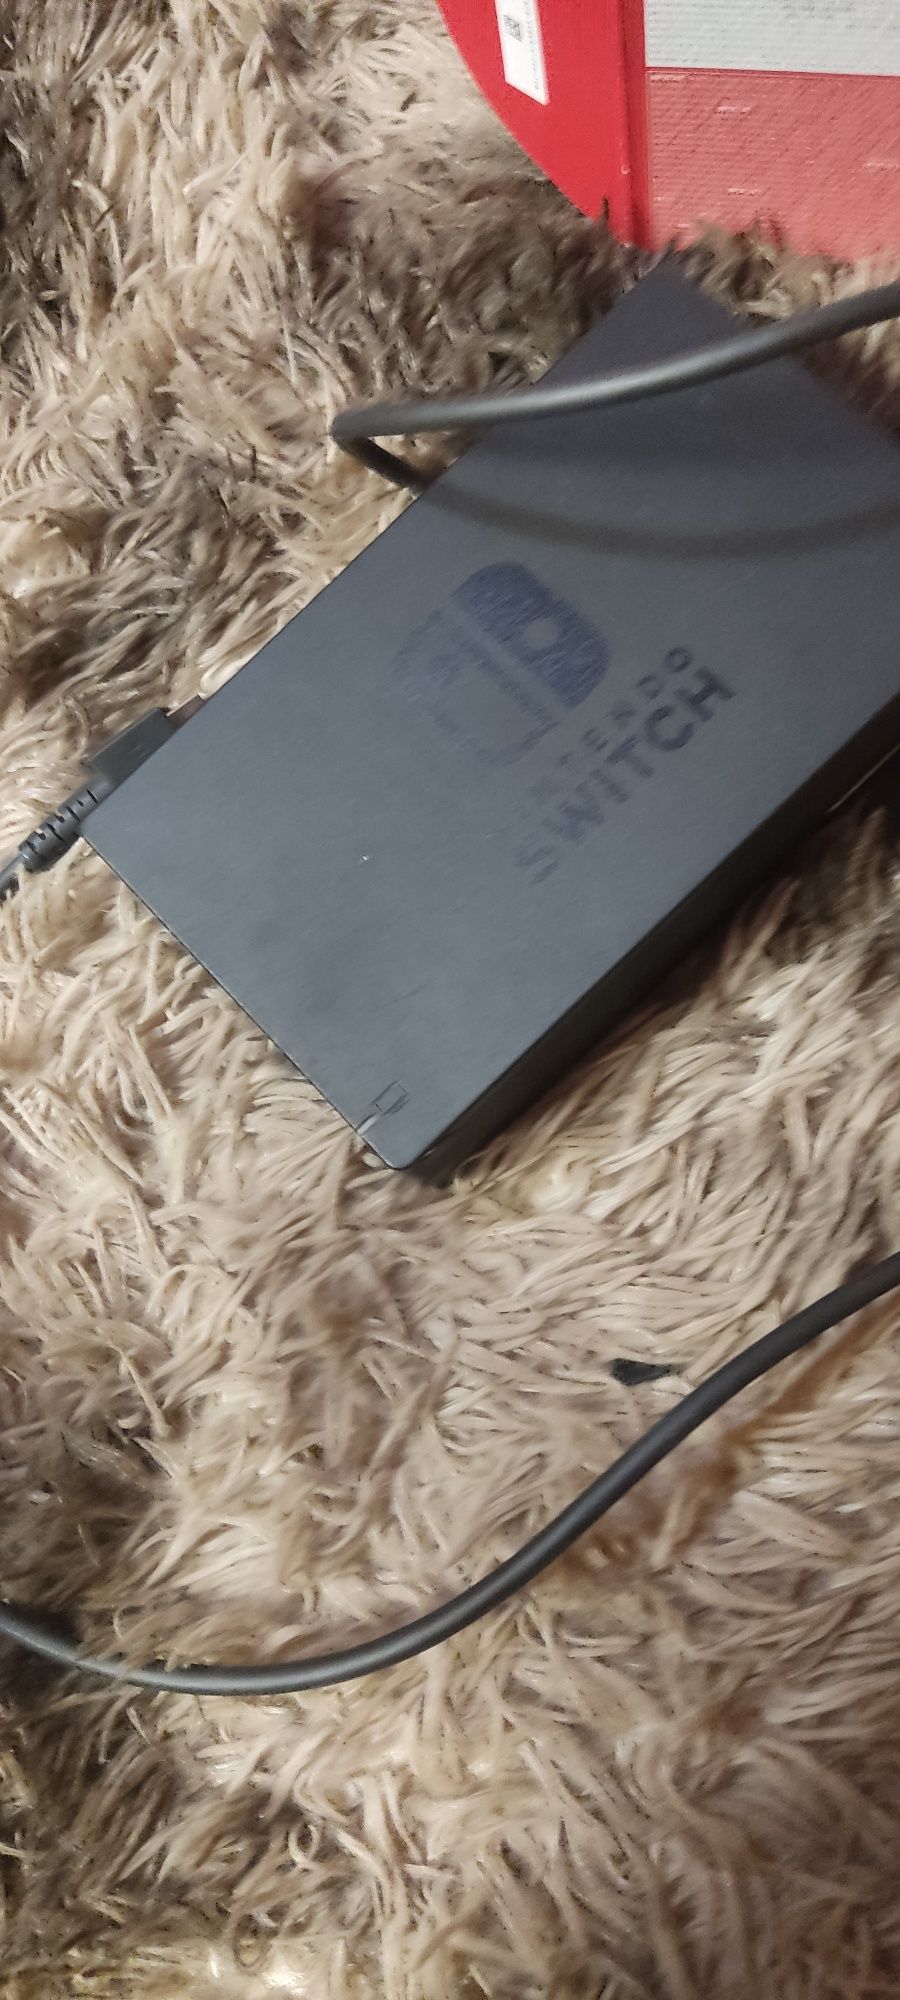 Vând consola nintendo switch , în stare bună de funcționare